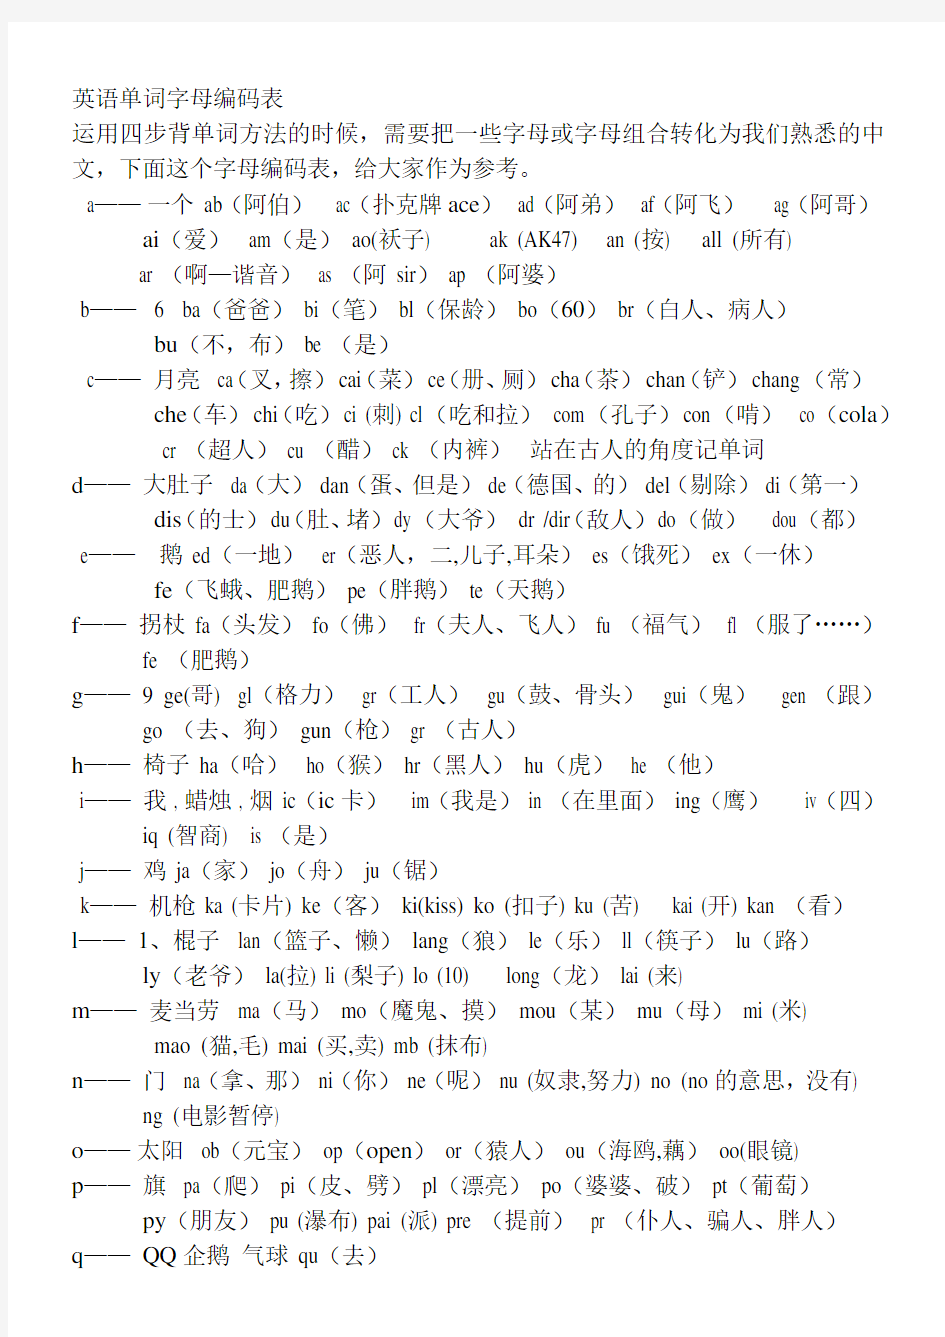 英语单词字母编码表